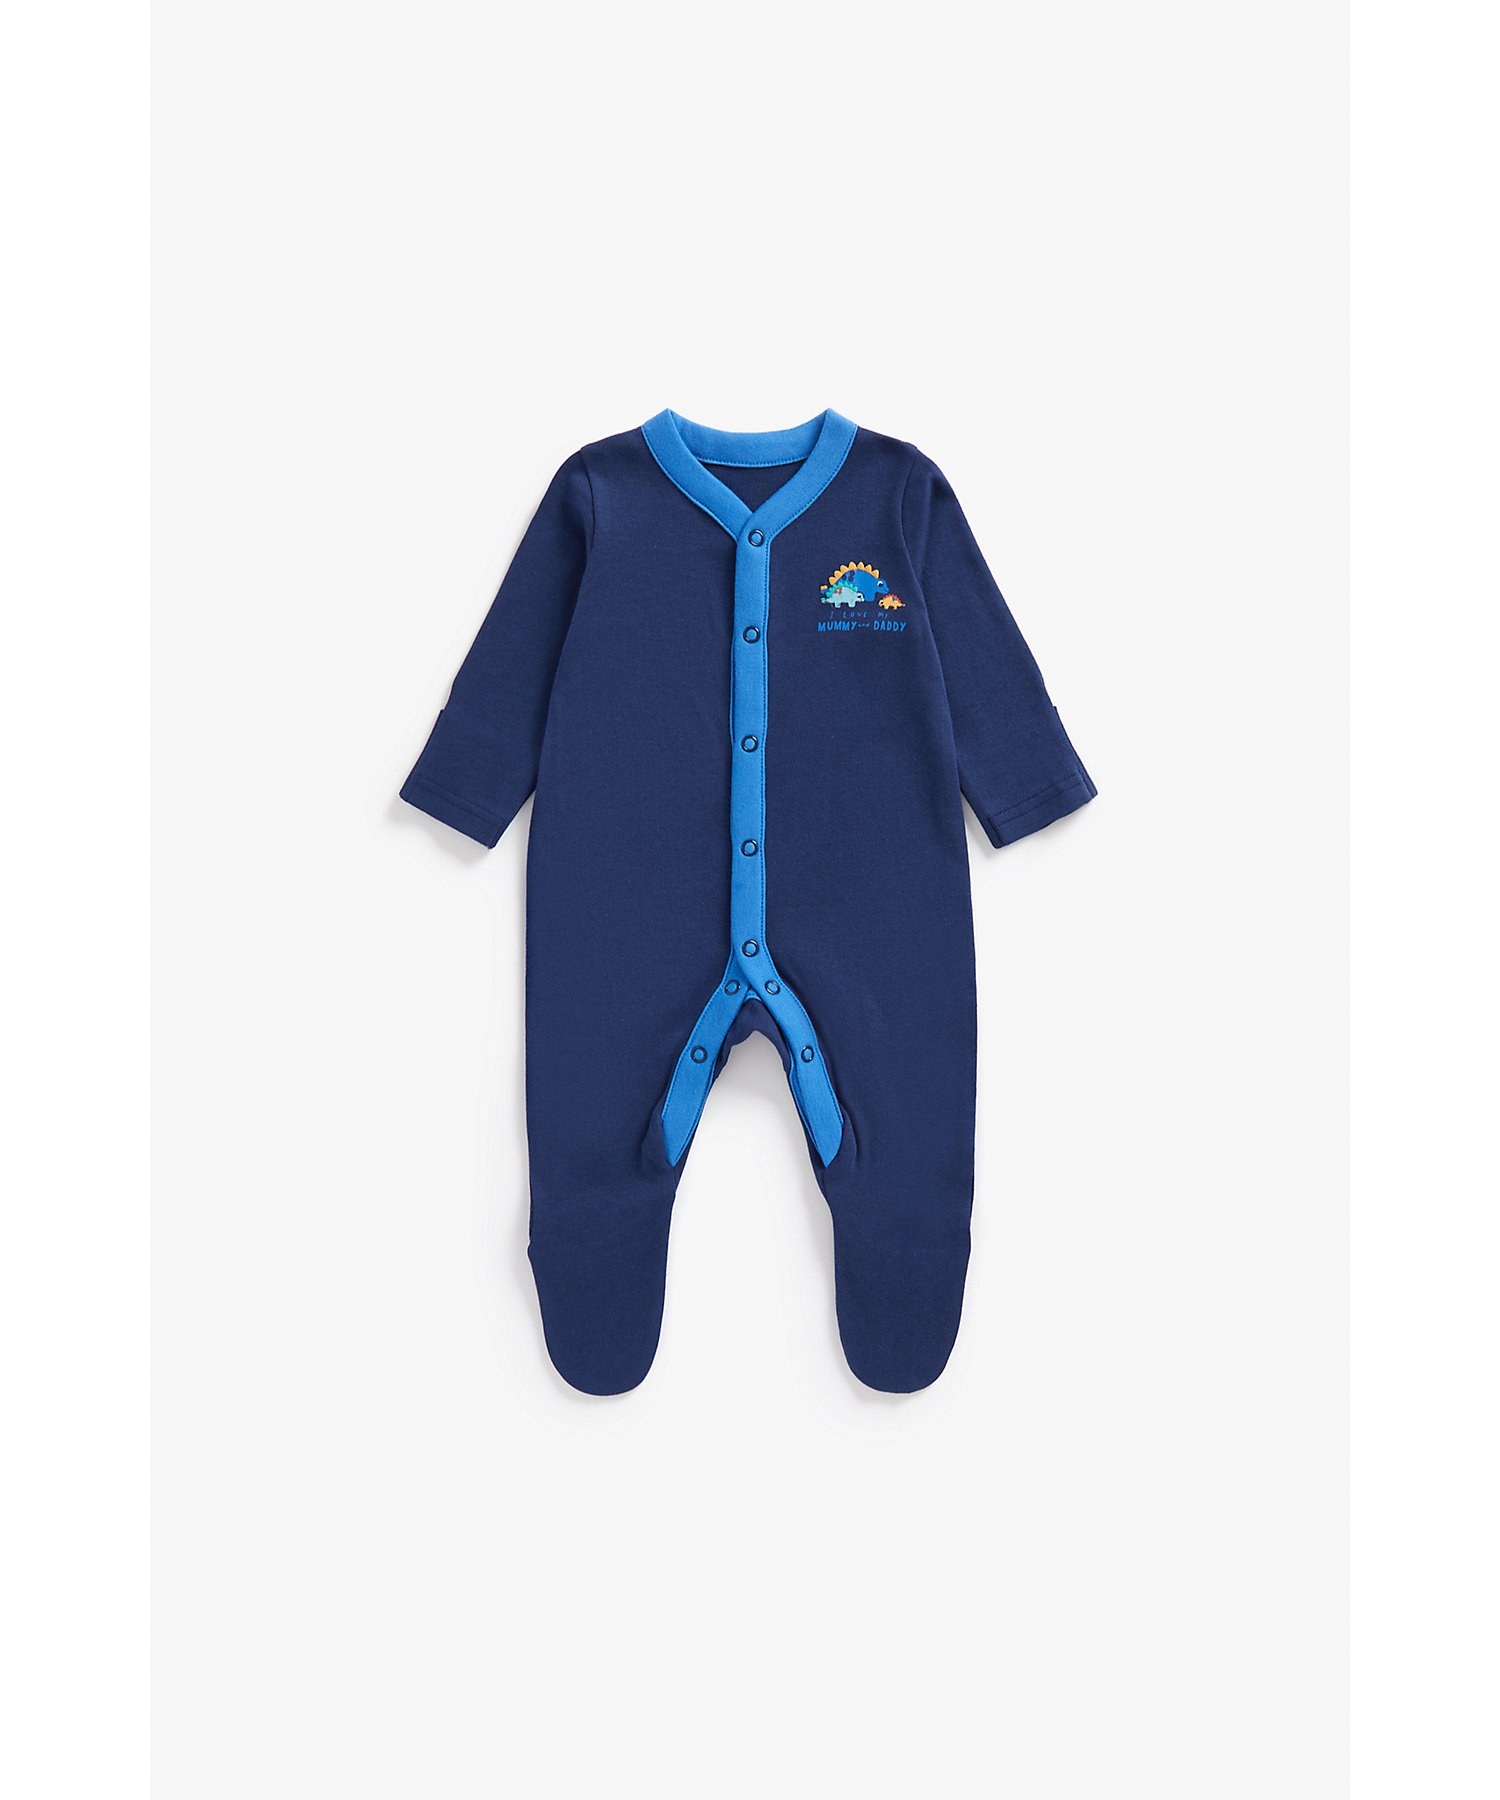 Boys Full Sleeves Sleepsuits -Pack of 3-Blue